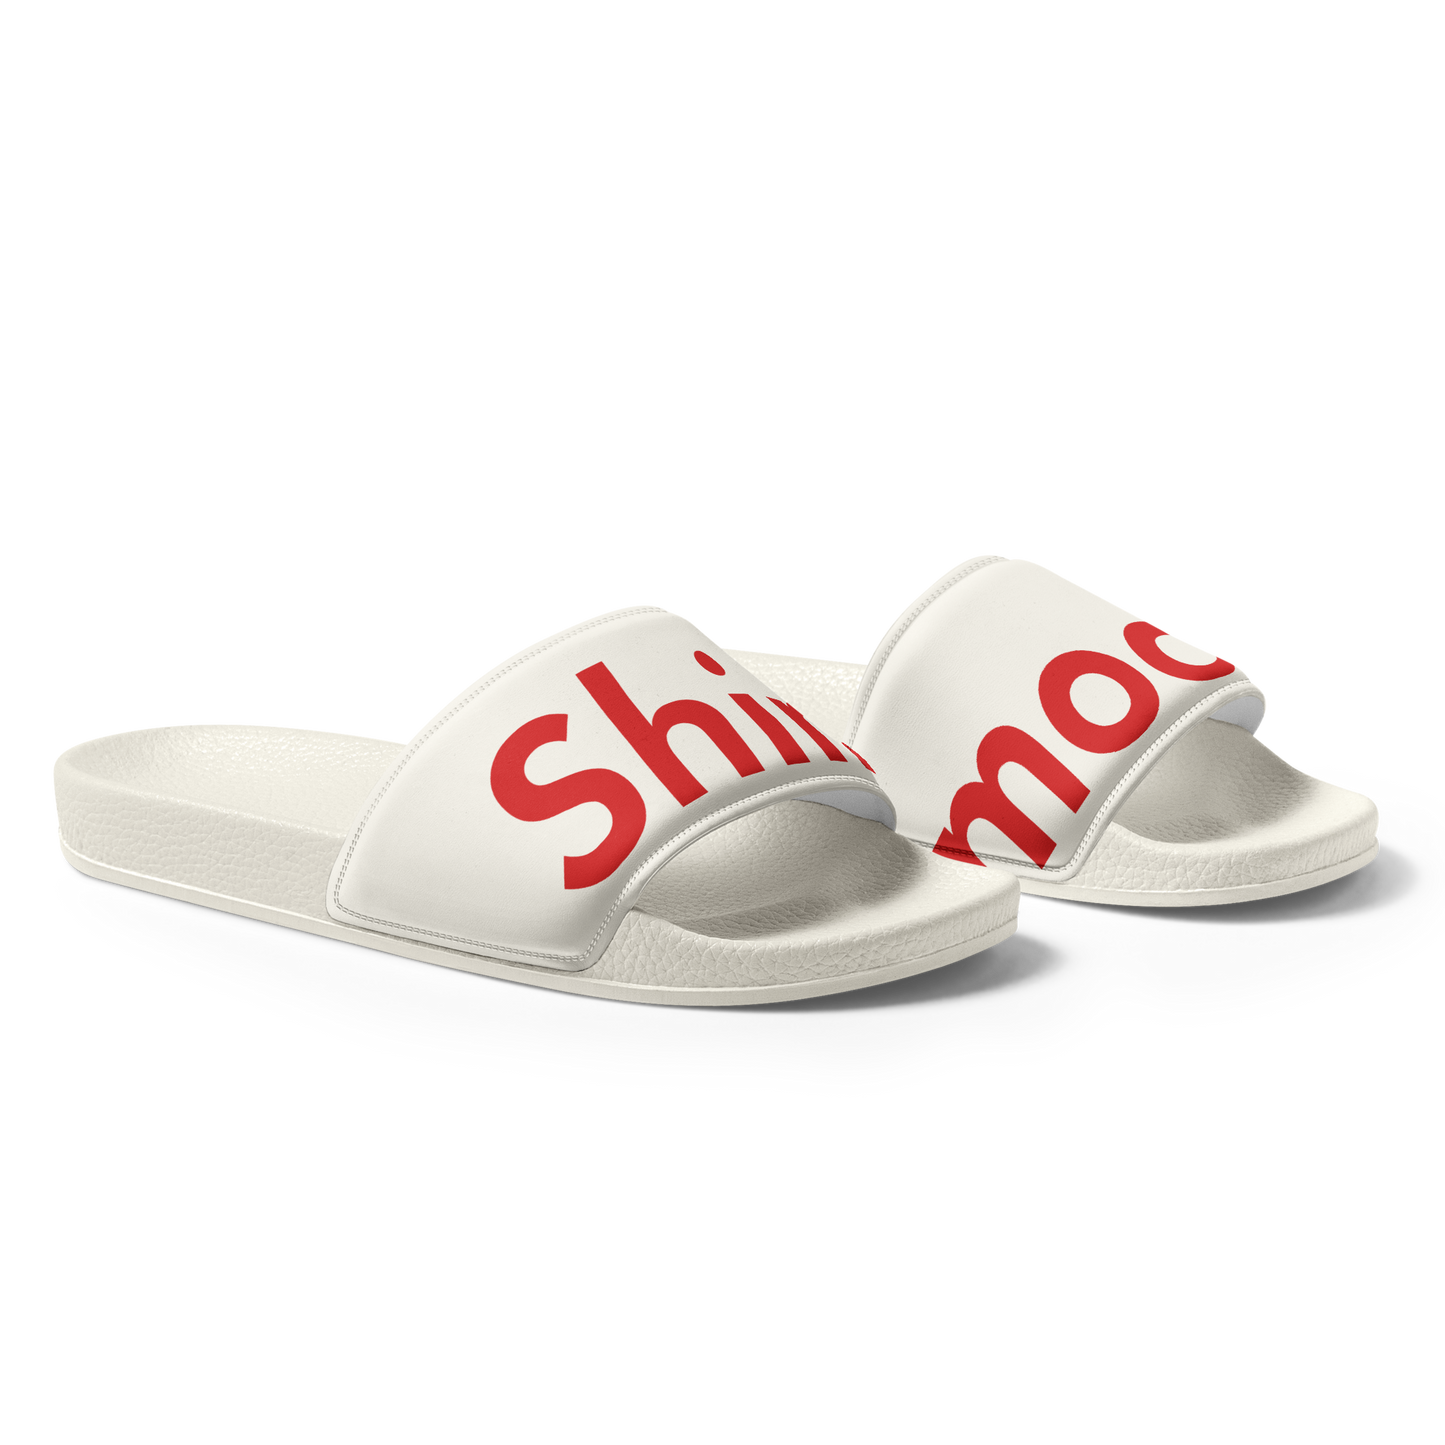 Women's Shimoda Shower Shoes